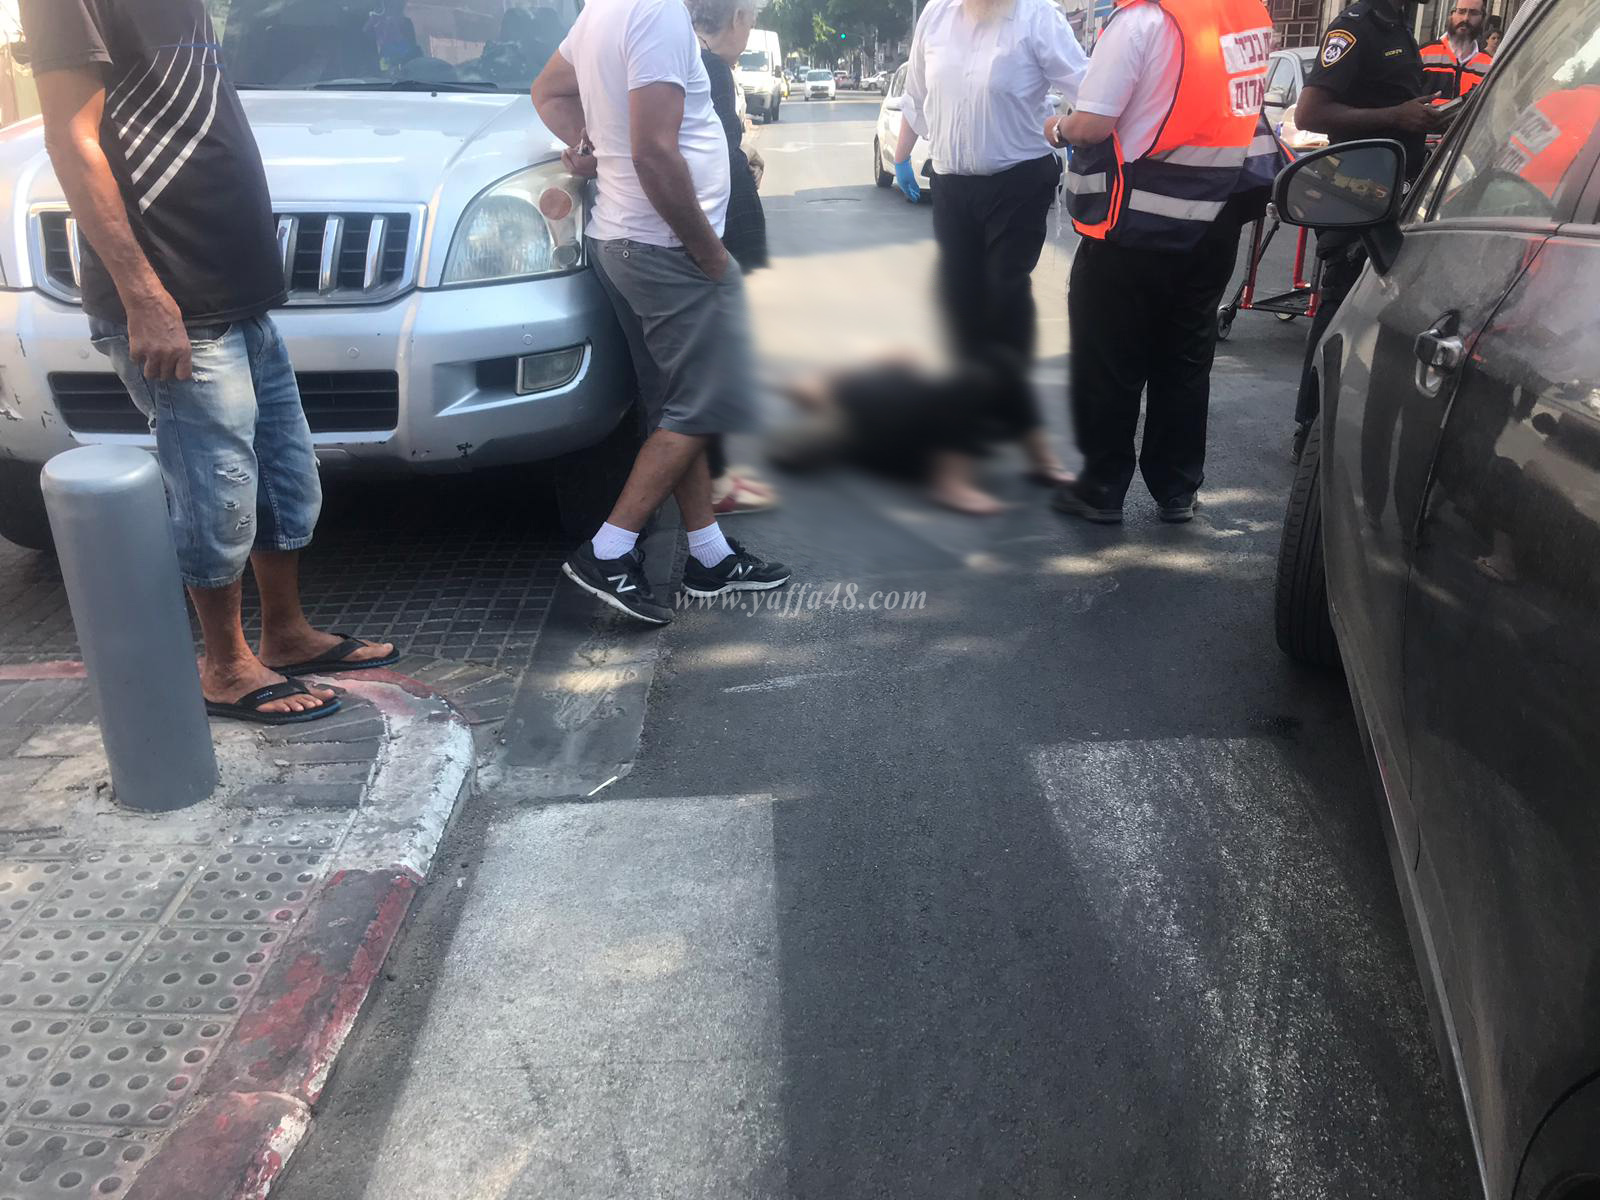  بالصور: اصابة متوسطة لسيدة بحادث دهس في يافا 